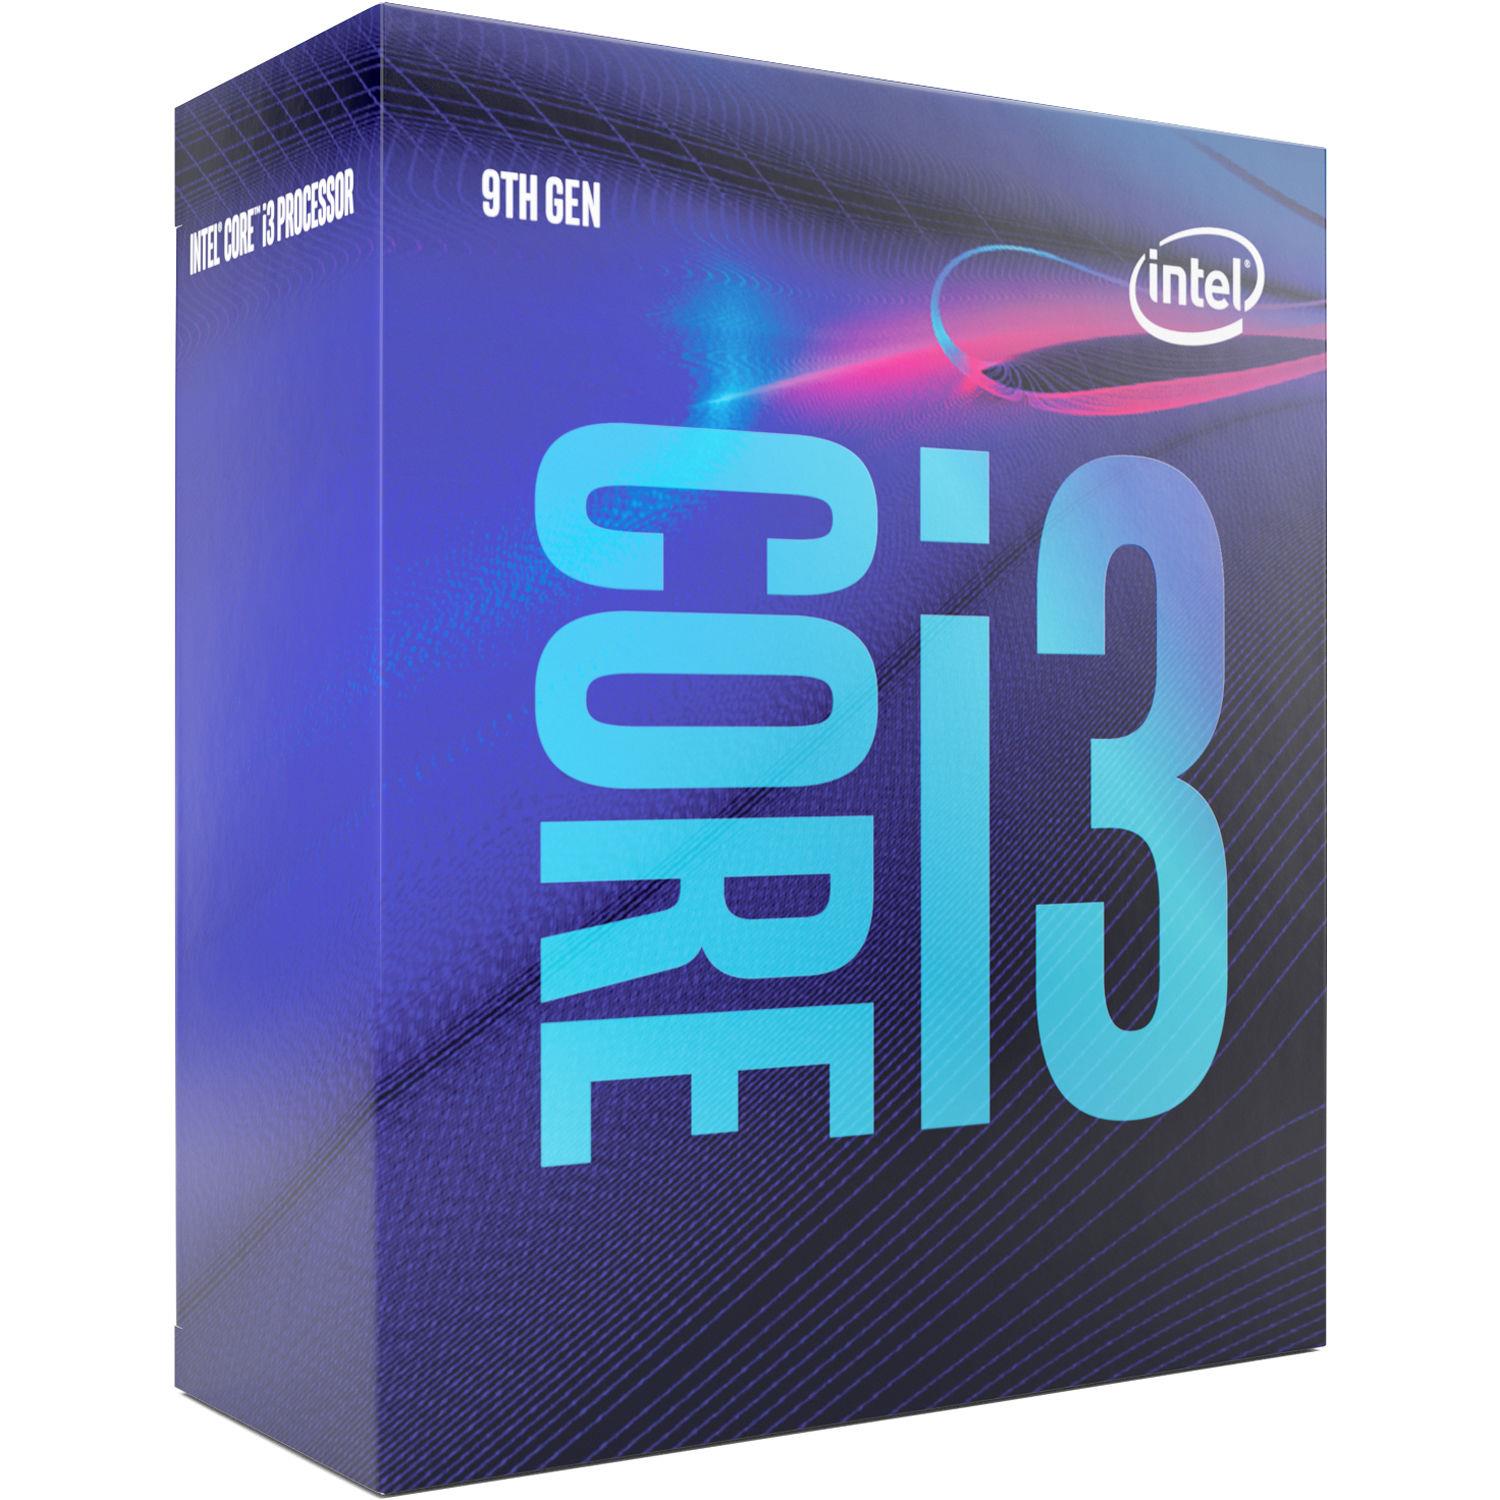 Центральний процесор Intel Core i3-9100 4/4 3.6GHz 6M LGA1151 65W box